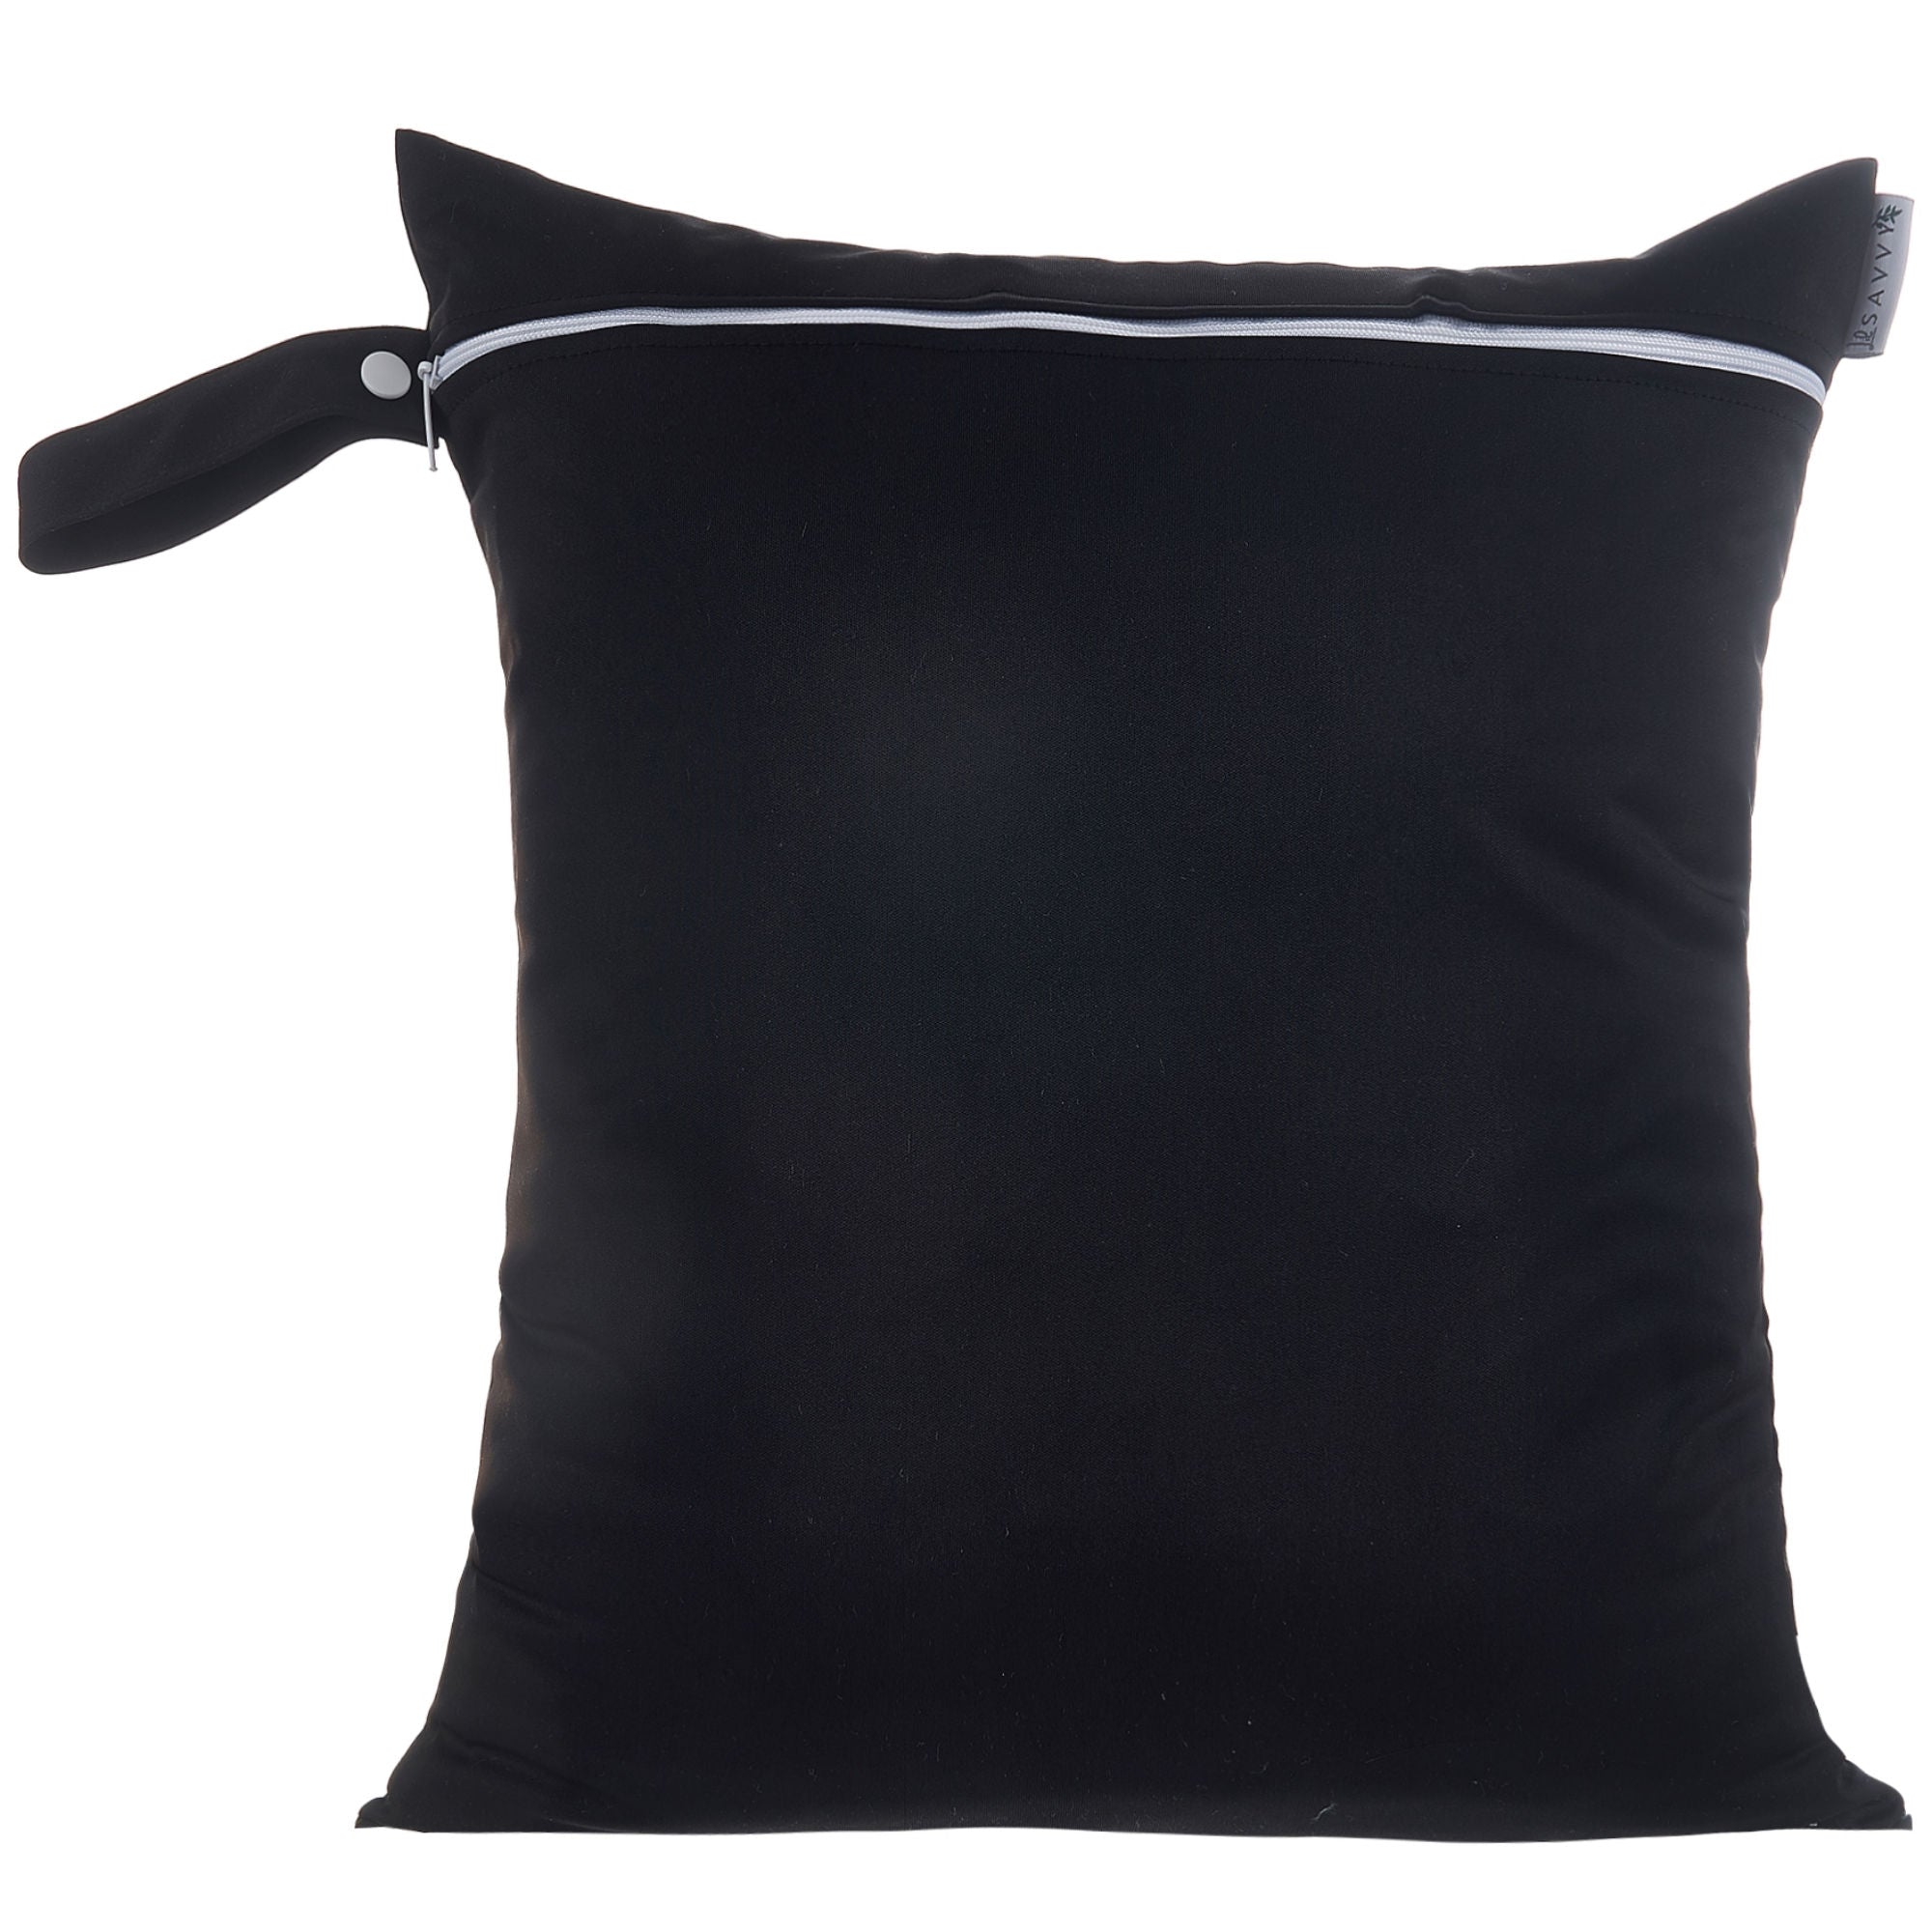 Large 40x45 cm Bag - Black Large Wet Bag Lil Savvy 